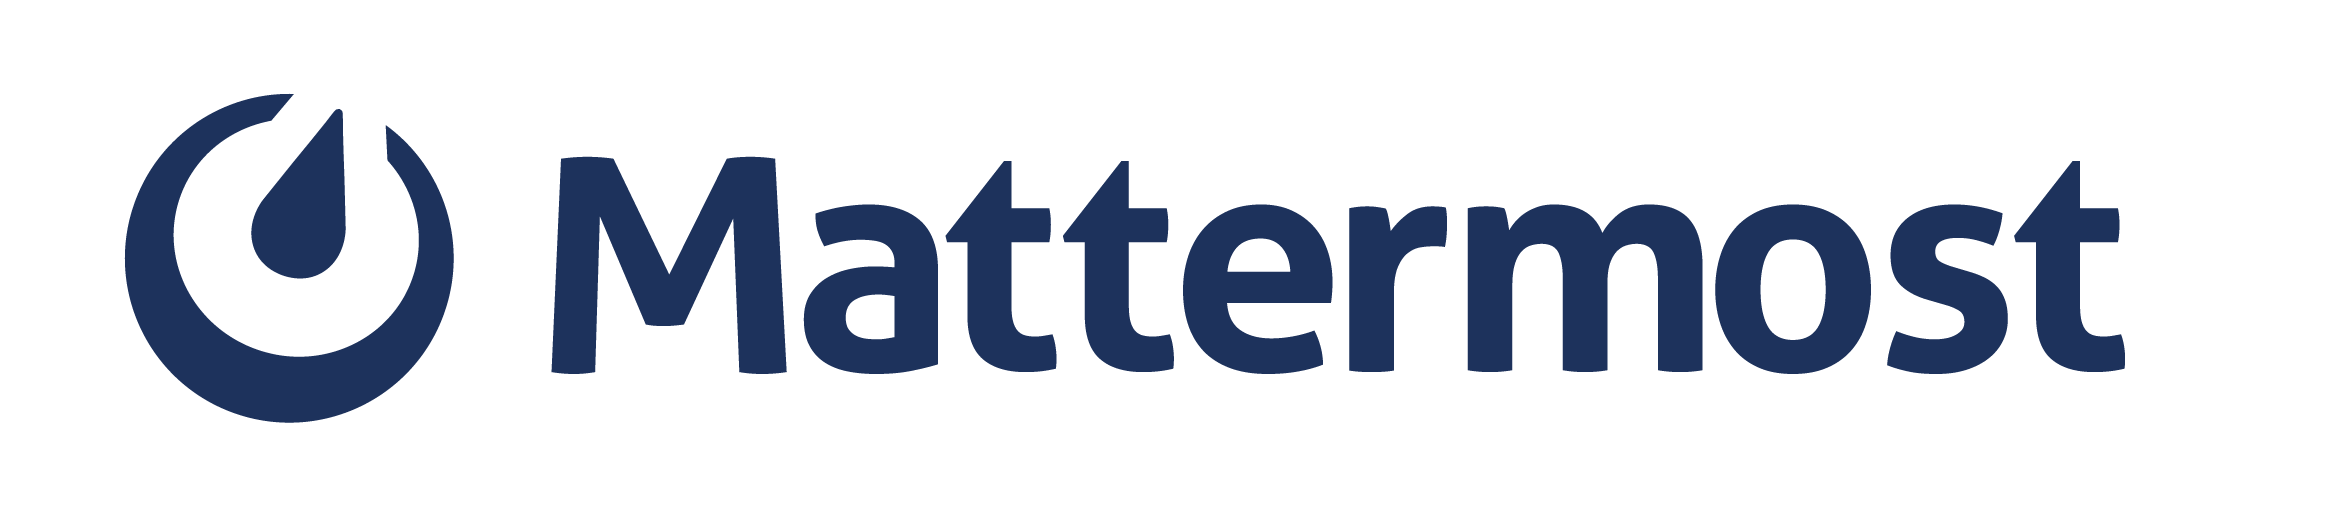 Mattermost lançon partneritete të reja për të nxitur risi dhe adoptim më të madh në sektorin publik